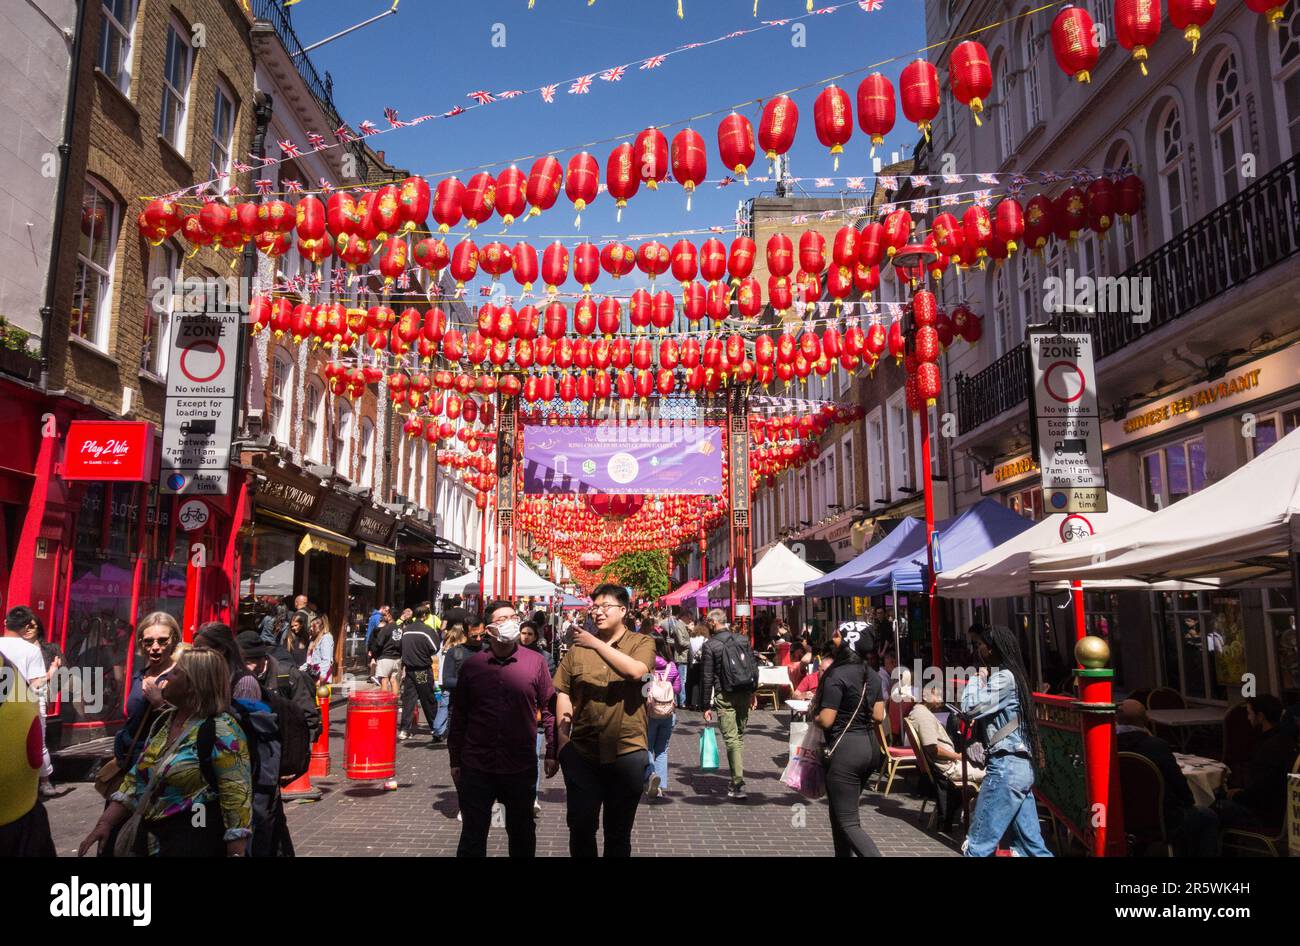 Touristenmassen und rote Papierlaternen auf der Gerrard Street in Chinatown, Soho, im Zentrum von London, England, Großbritannien Stockfoto